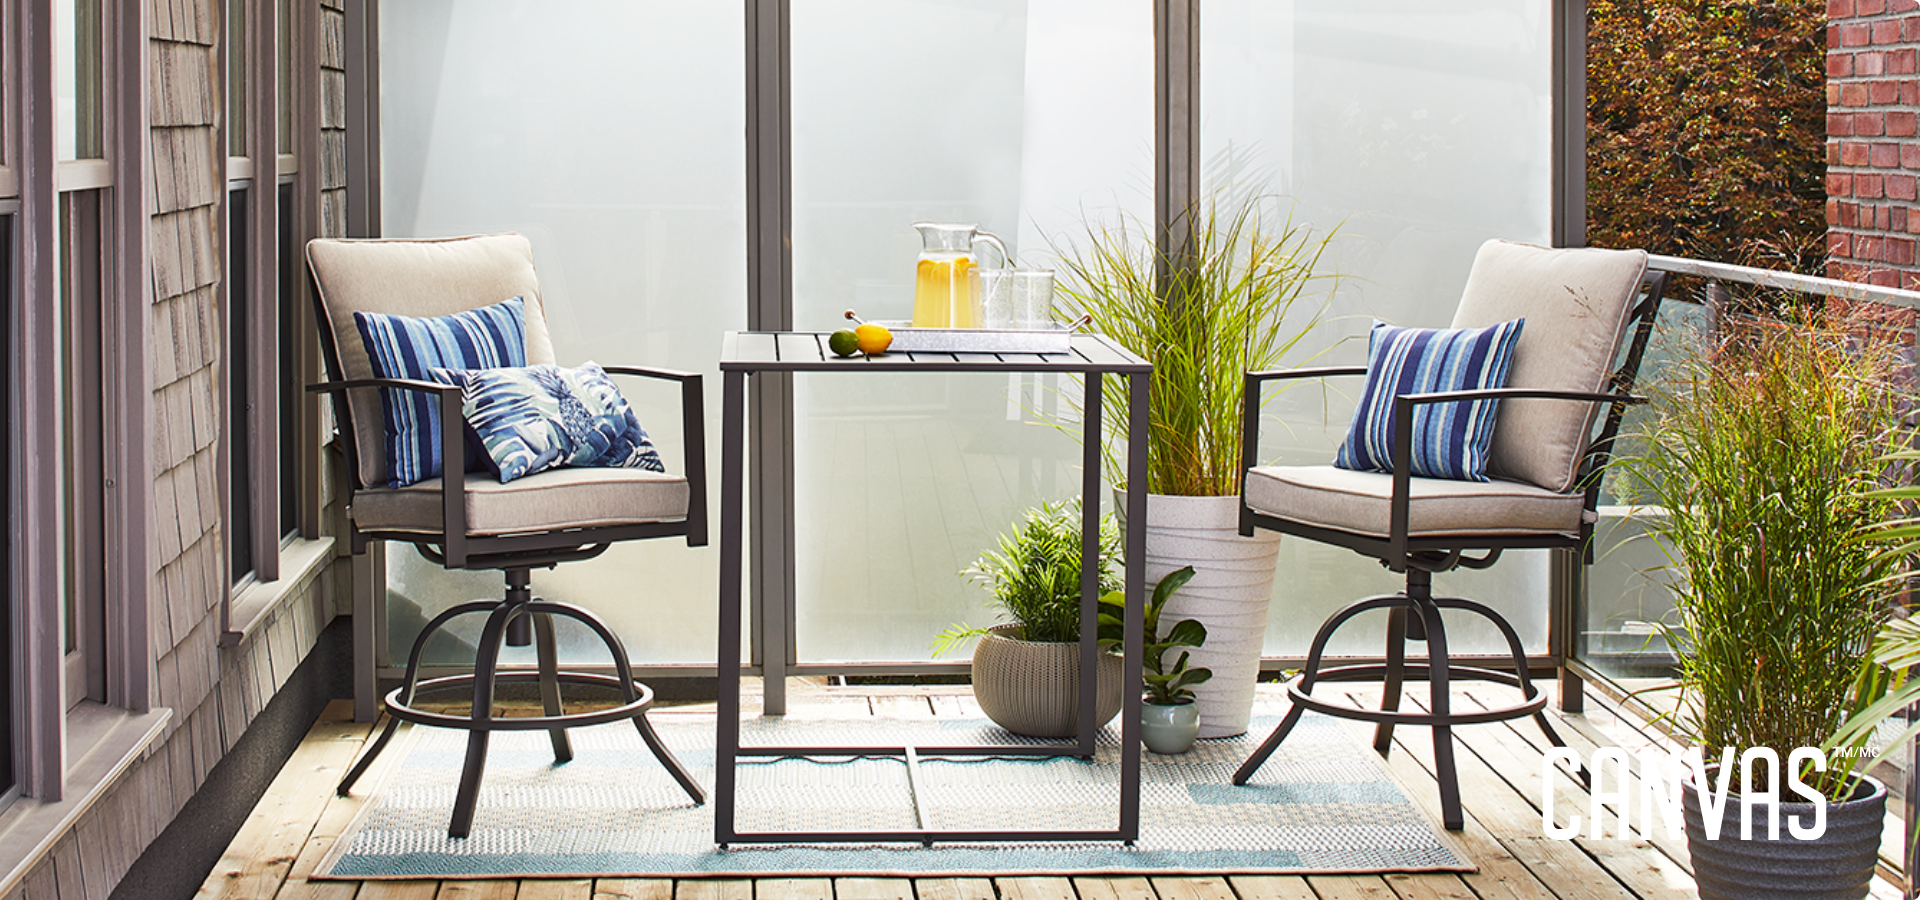 Organisez votre balcon ou petit espace extérieur avec cette collection simple et élégante avec des fauteuils pivotants et une table haute.